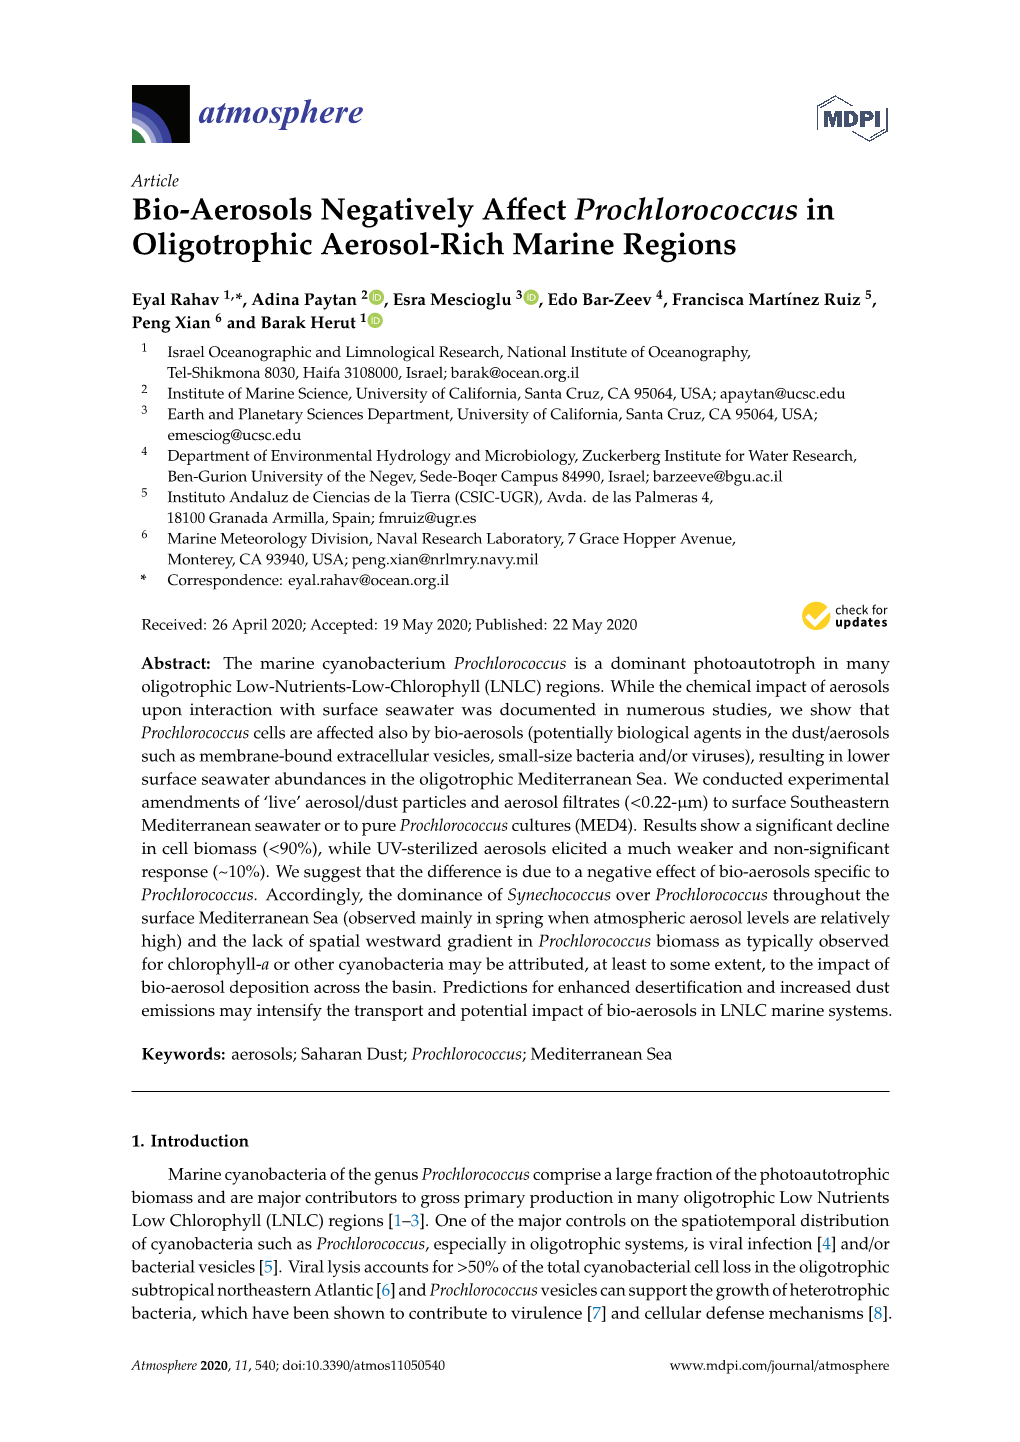 Bio-Aerosols Negatively Affect Prochlorococcus in Oligotrophic Aerosol-Rich Marine Regions